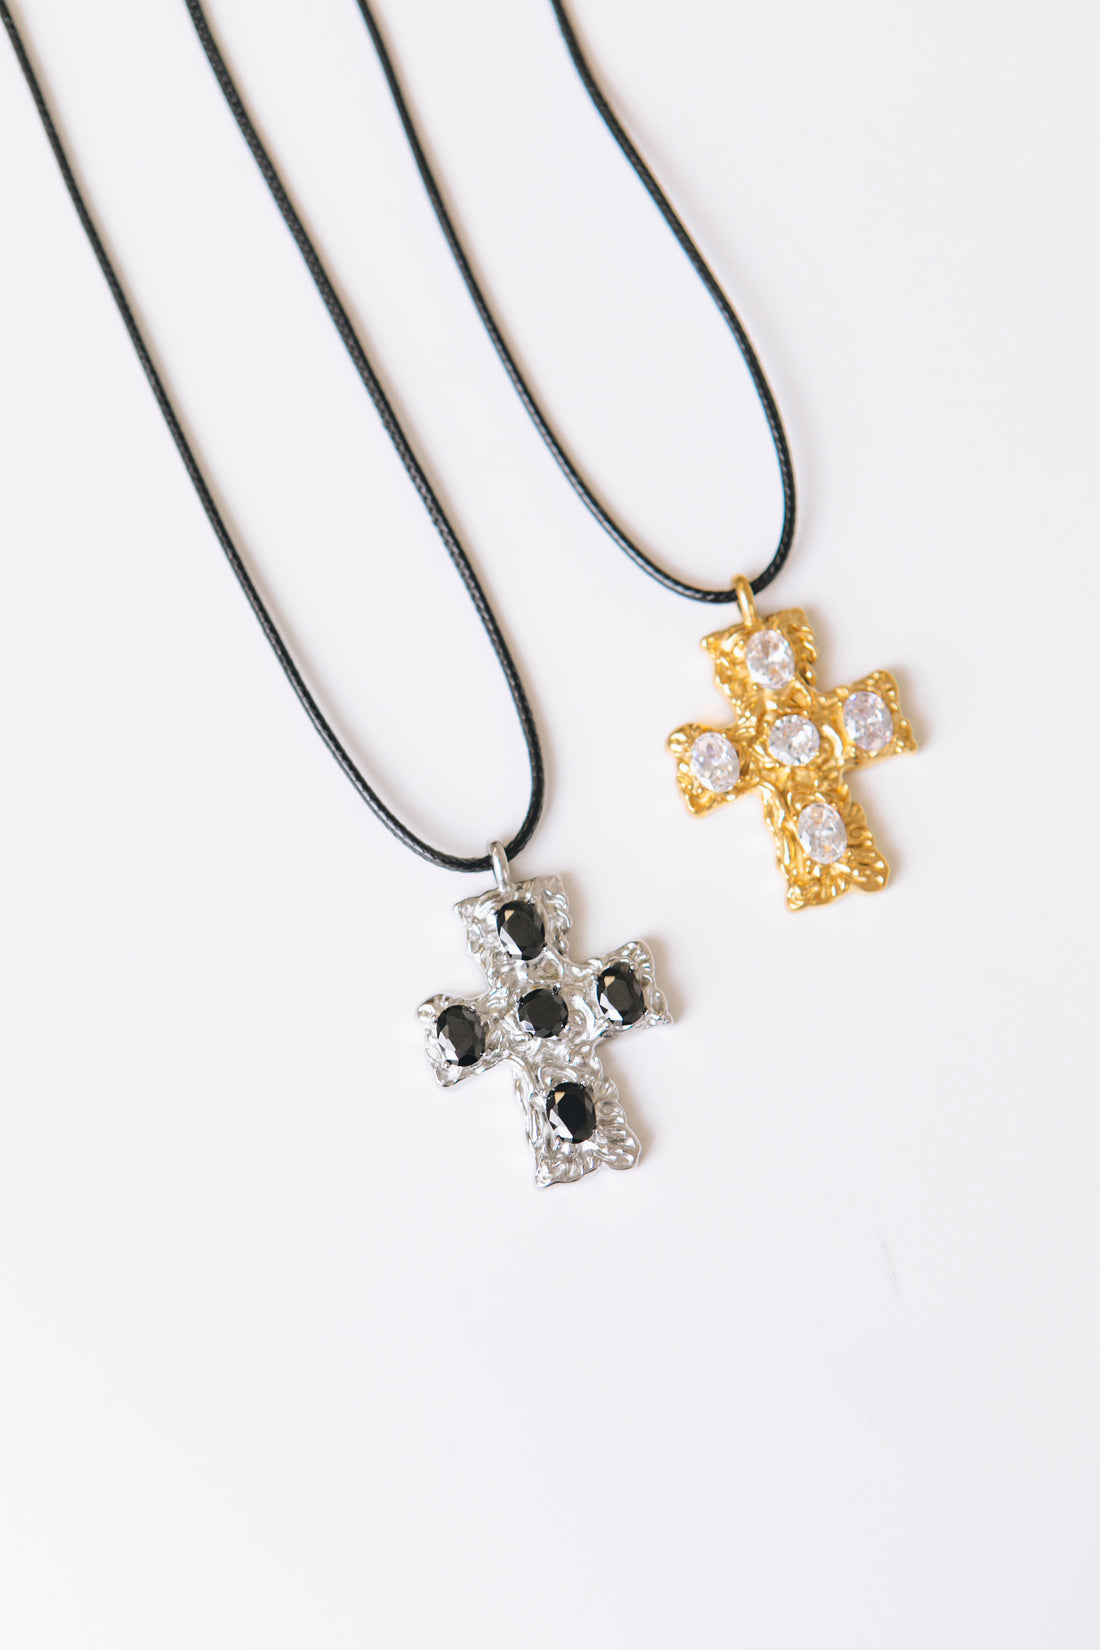 RESTOCKED: Waterproof Cross Pendant Necklace